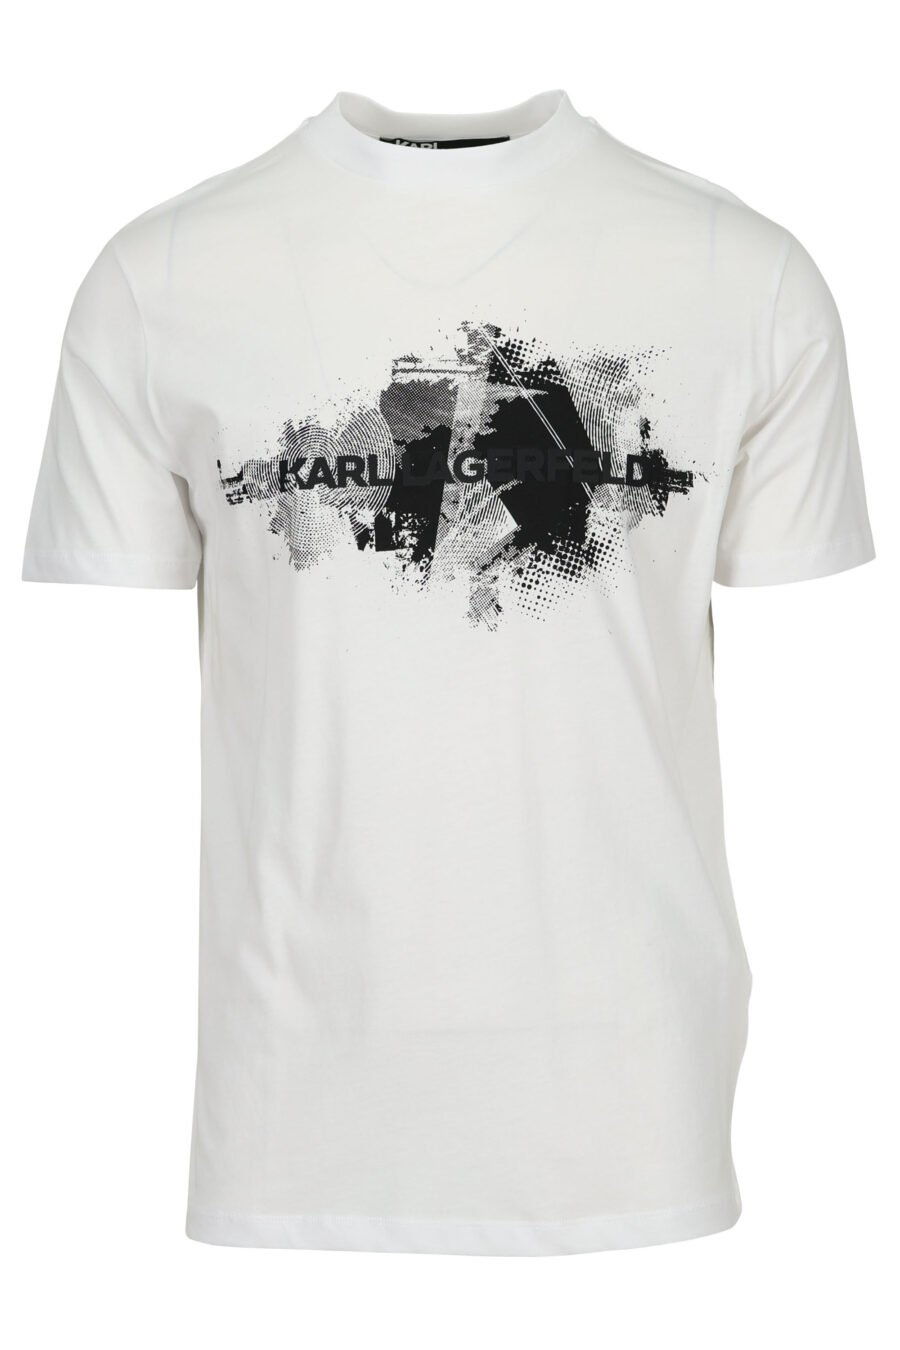 Camiseta blanca con logo en mancha negra - 4062226964739